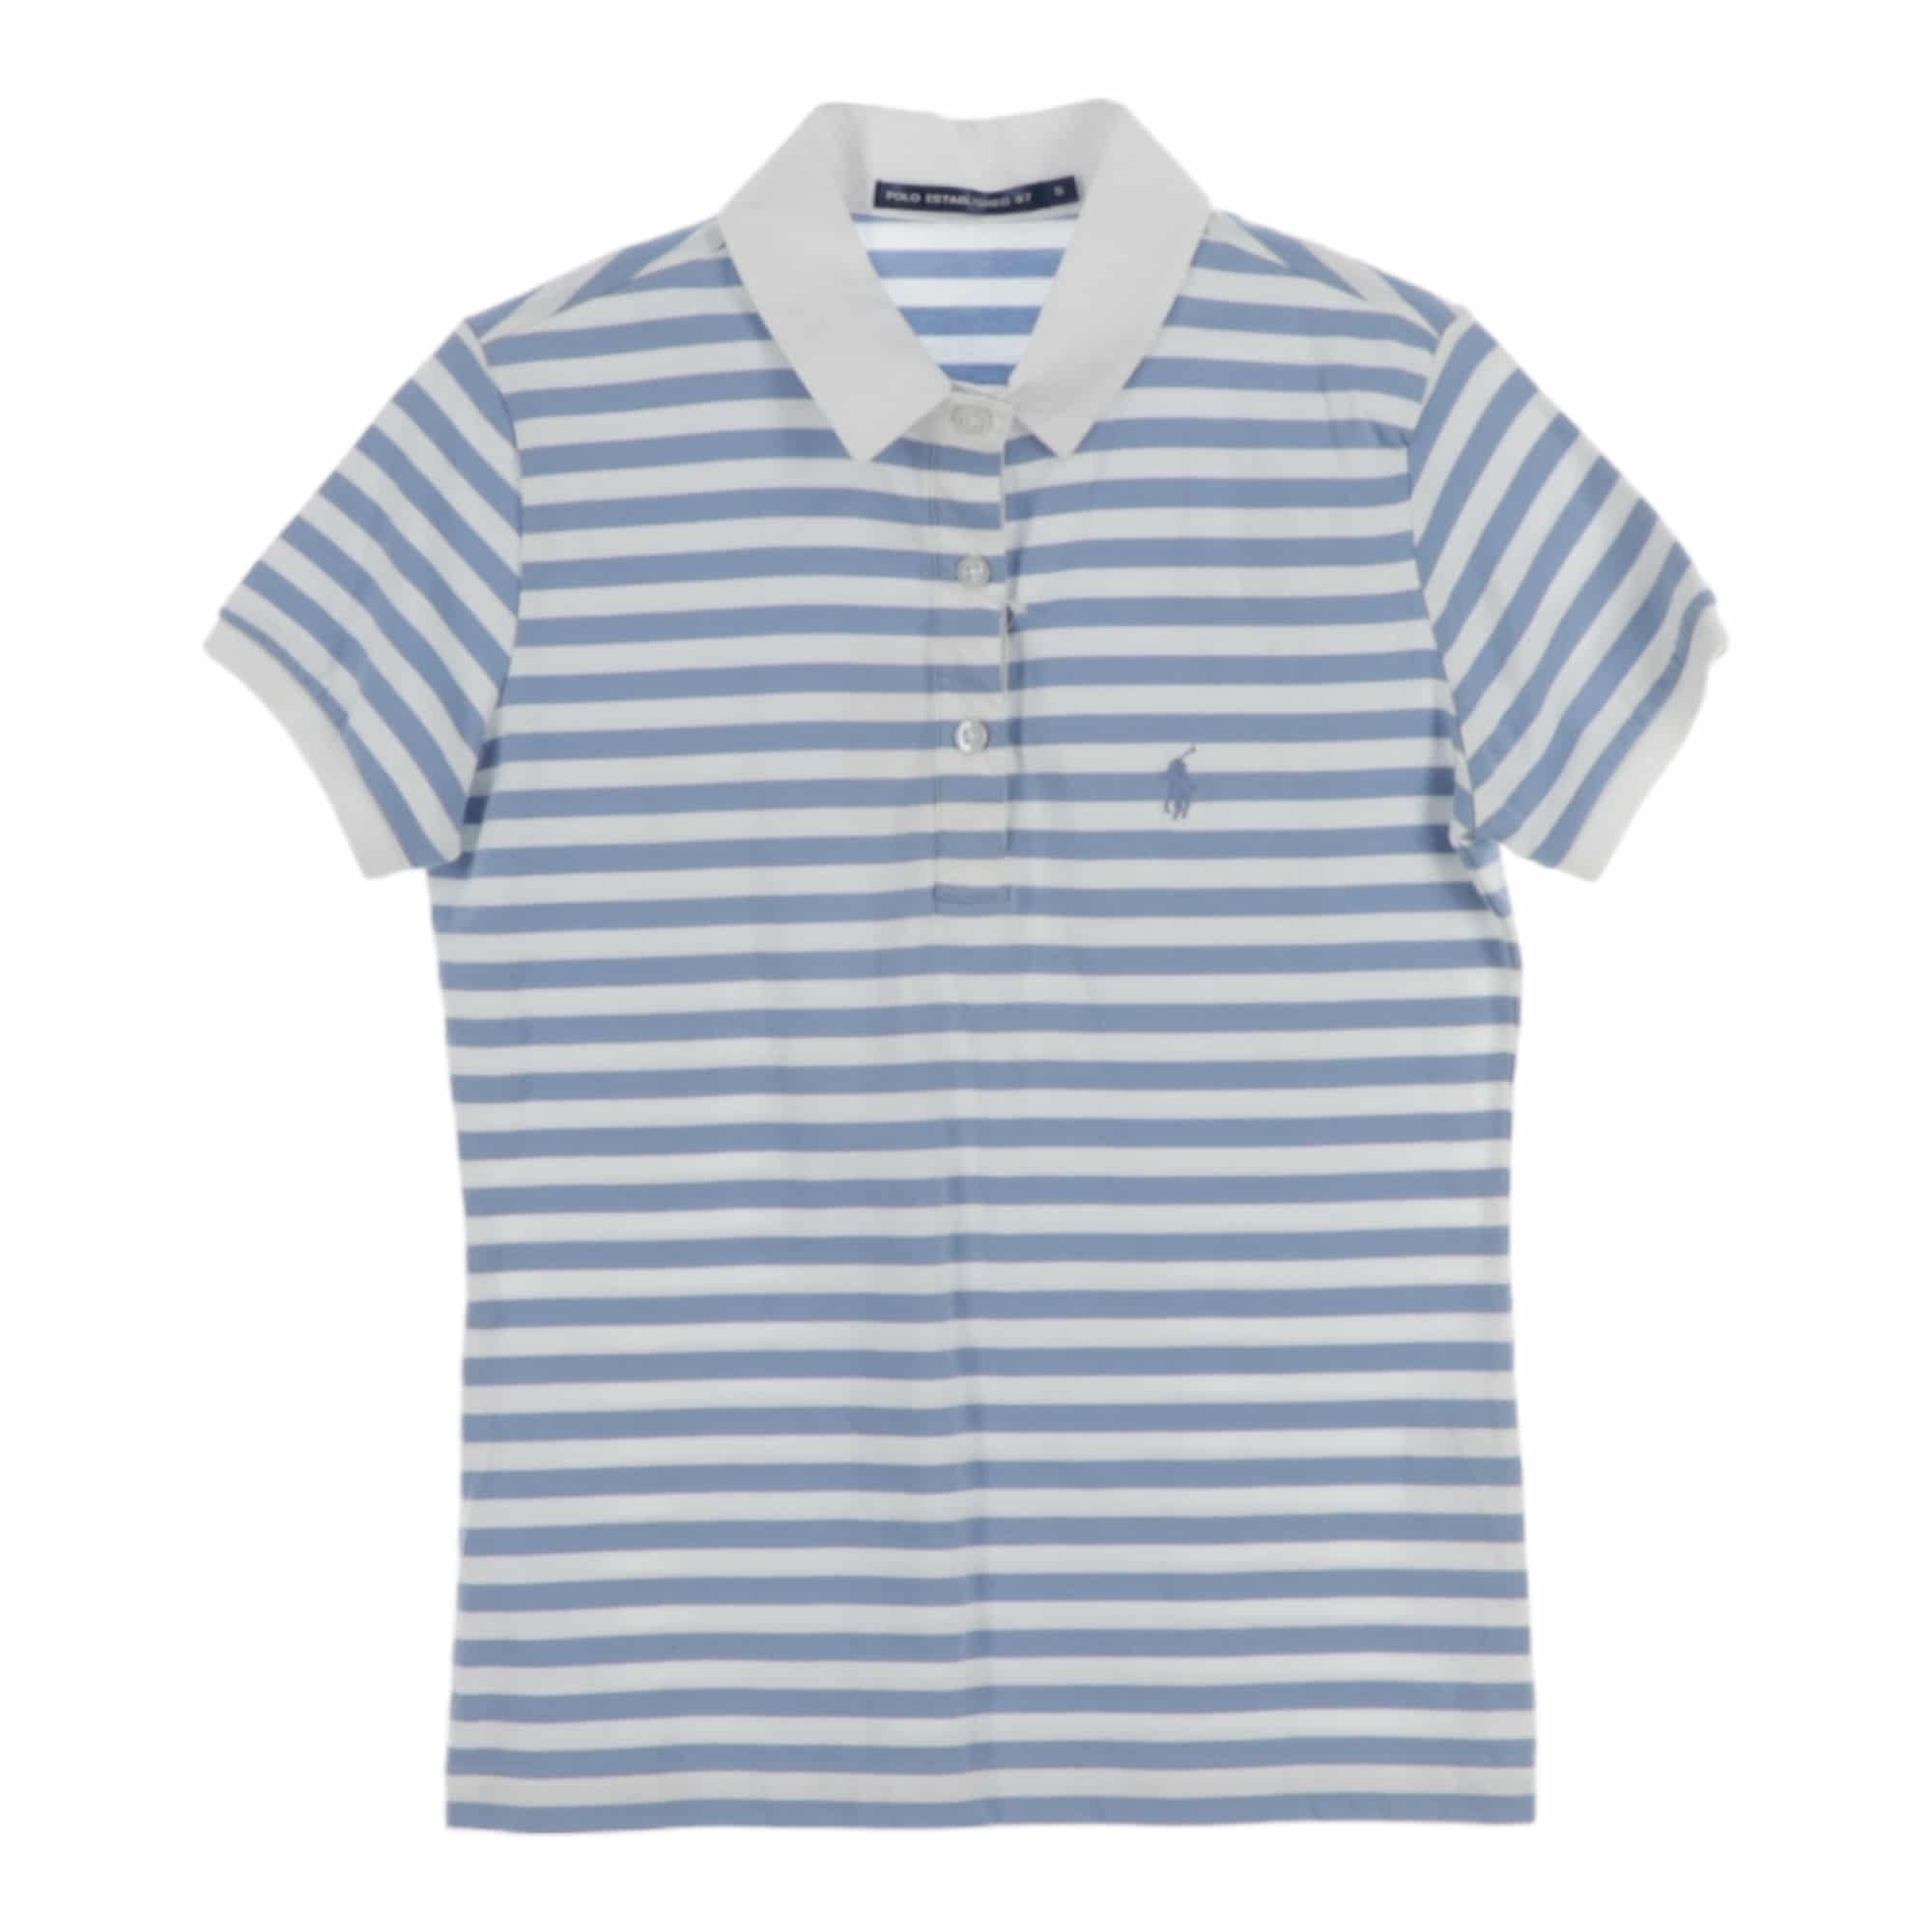 Polo Ralph Lauren,T-Shirts